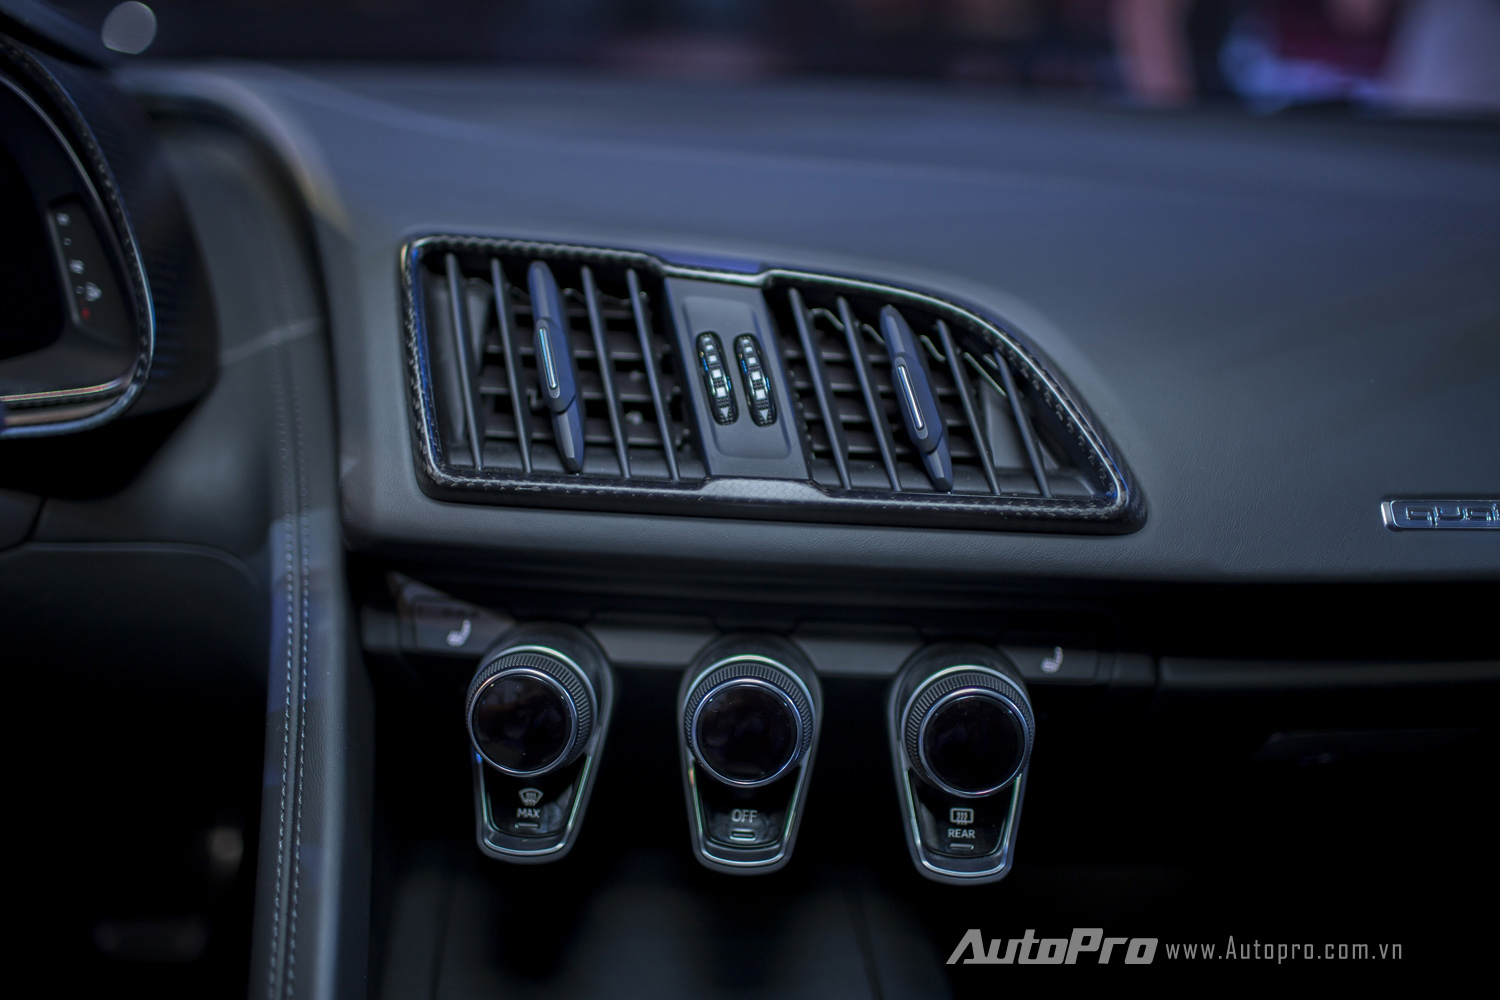 
Audi R8 V10 Plus là mẫu xe thể thao thuần chất nên có thiết kế đơn giản và thực dụng ở bên trong nội thất.
